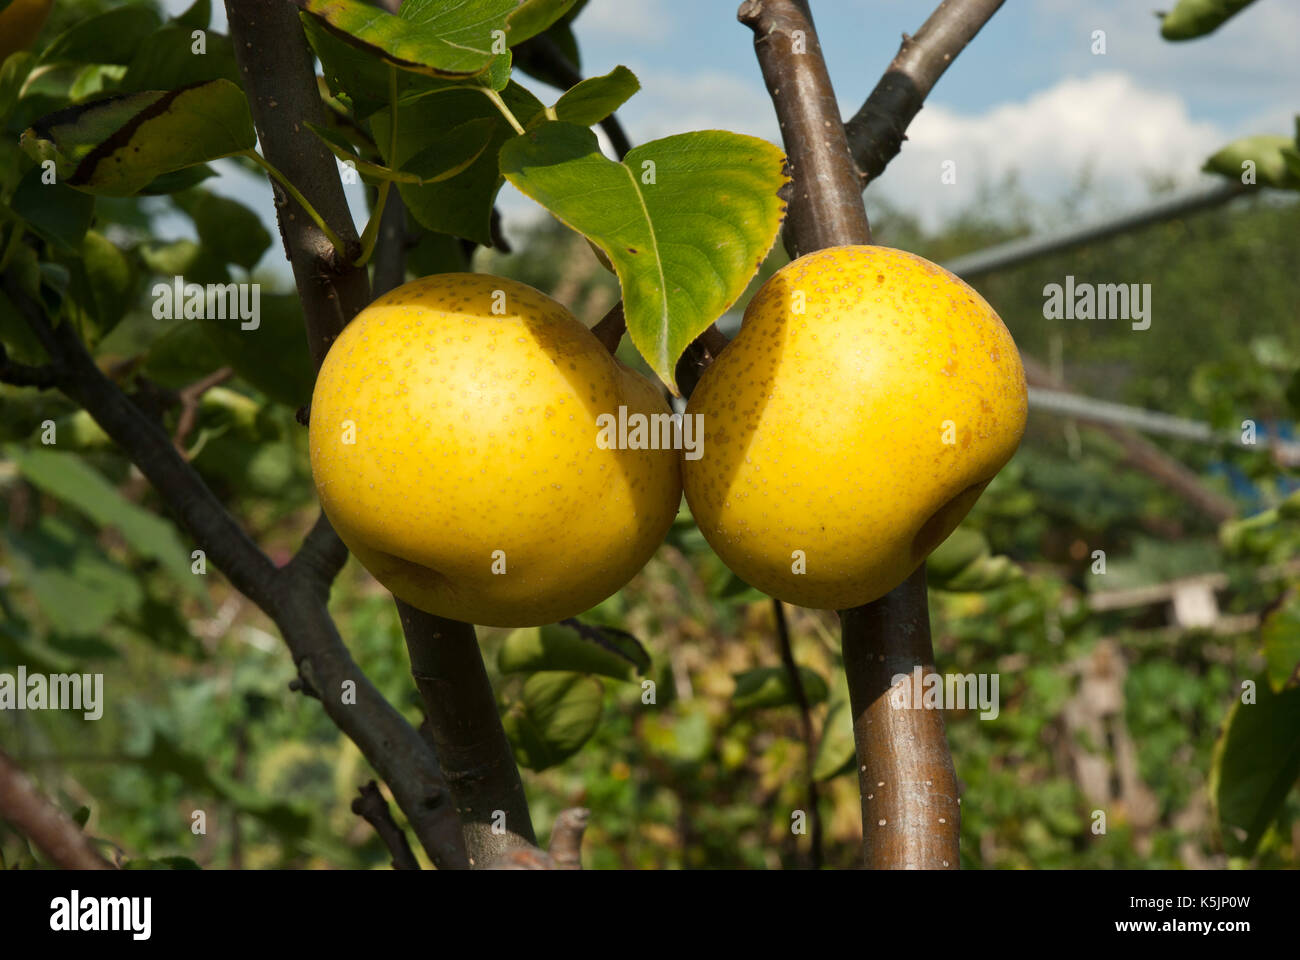 Due mature cinese giallo/ Pere asiatiche cresce su un ramo, Foto Stock